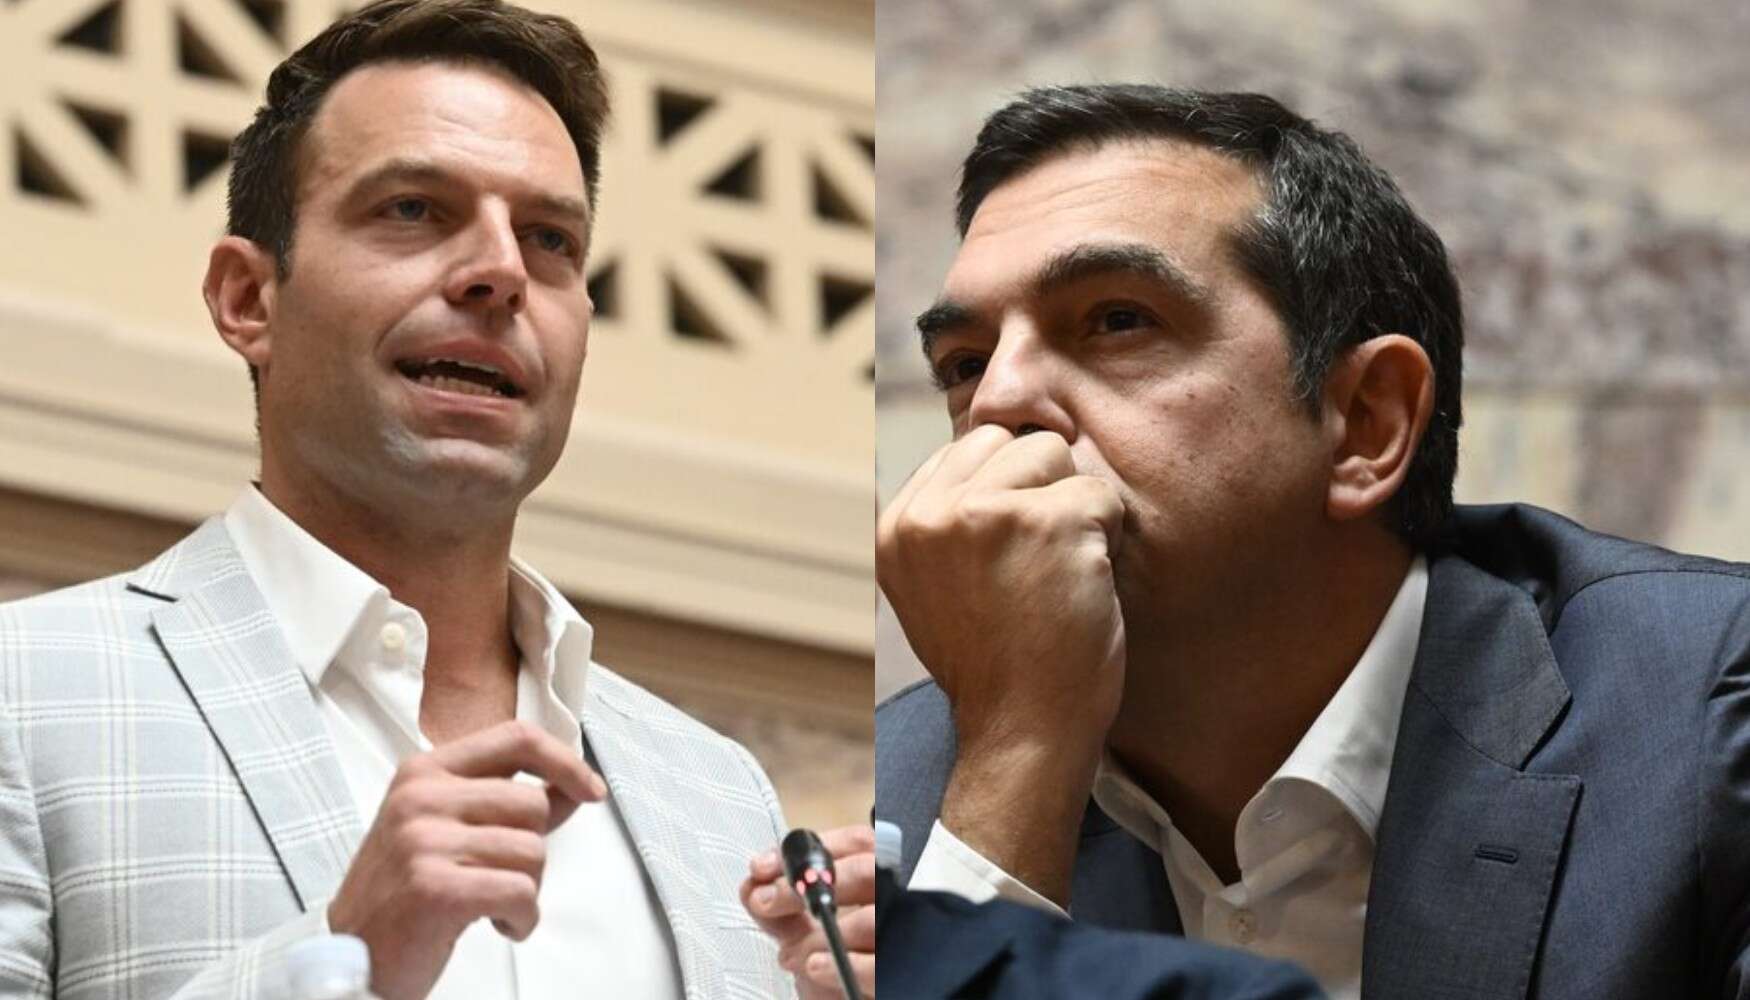 tsipras kaselakis | newstok.gr